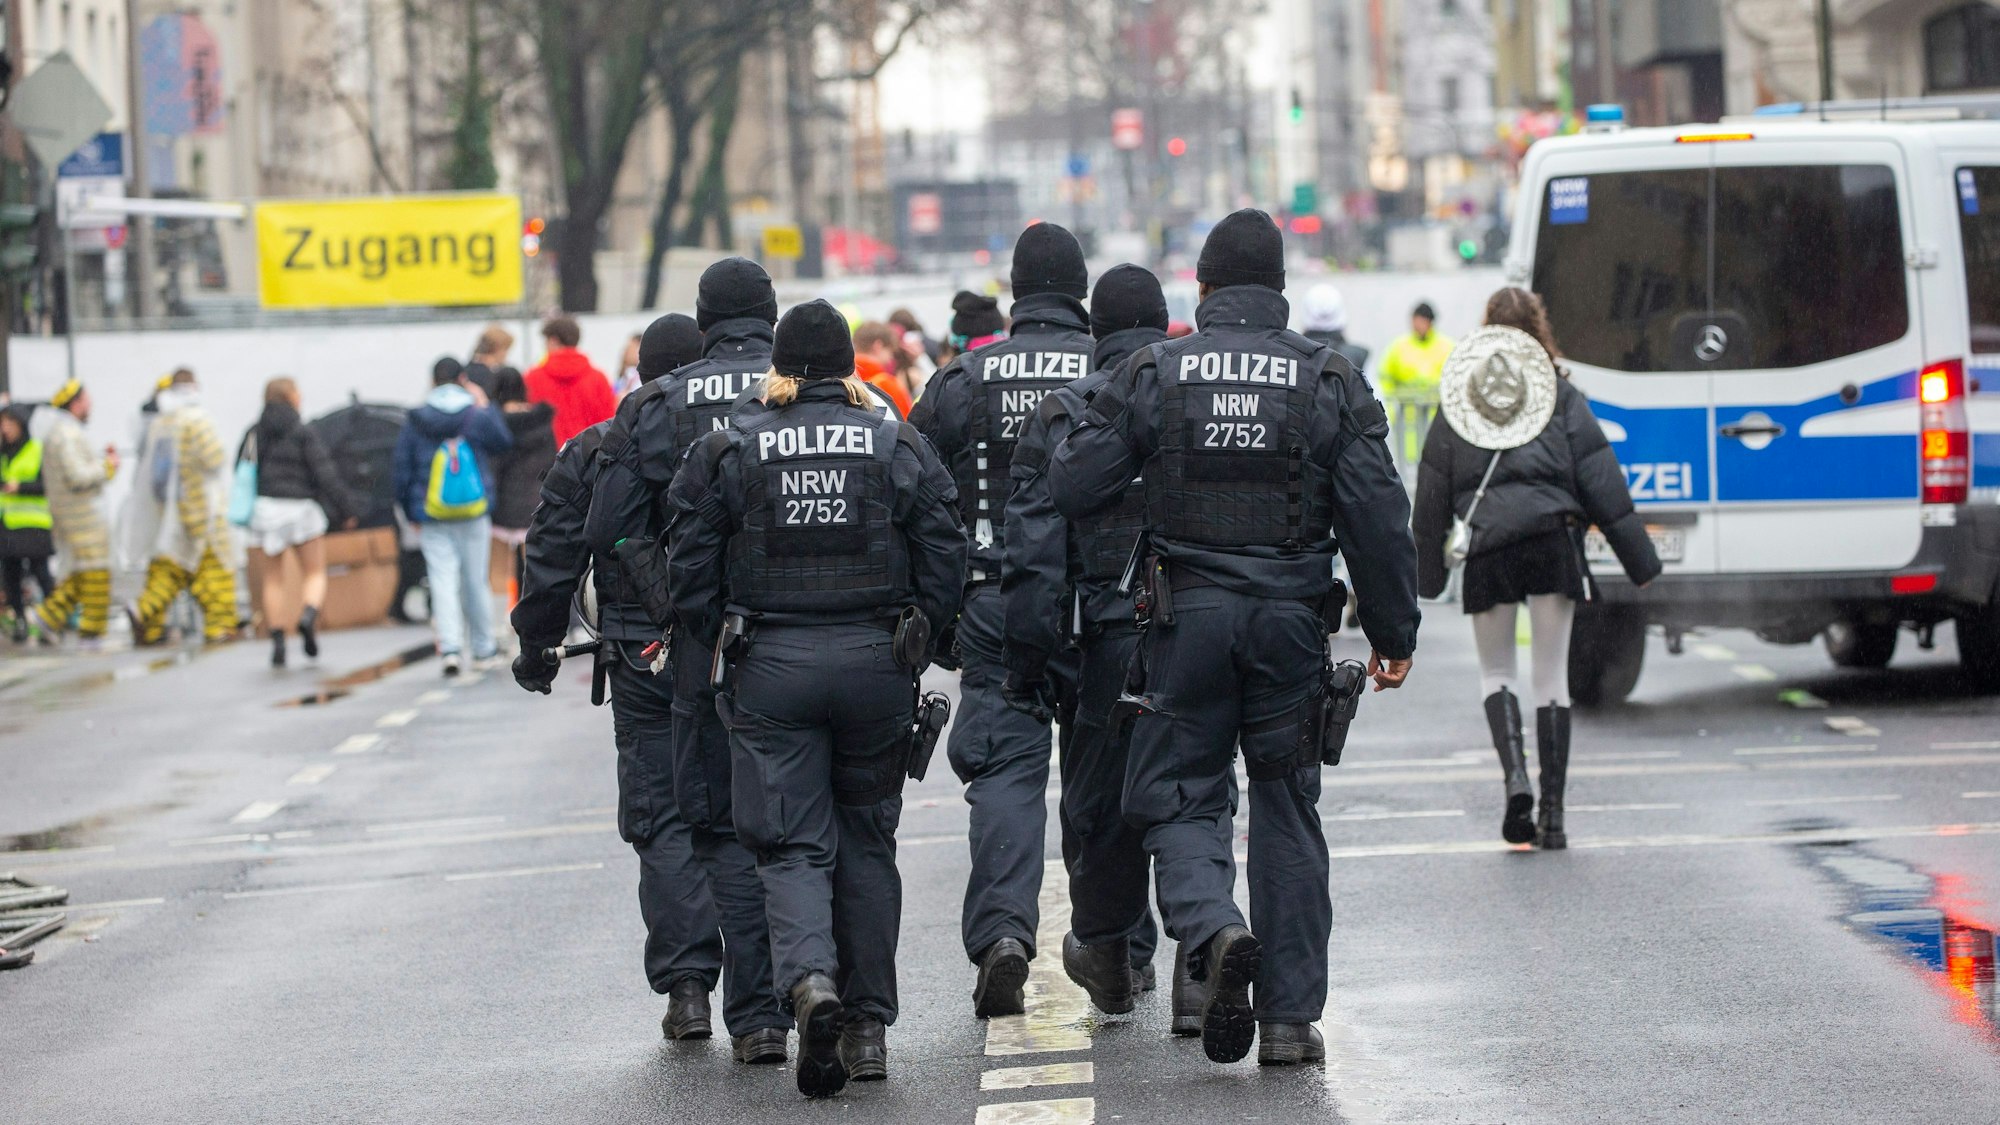 Die Zülpicher Straße im Blick: Polizisten im Einsatz.